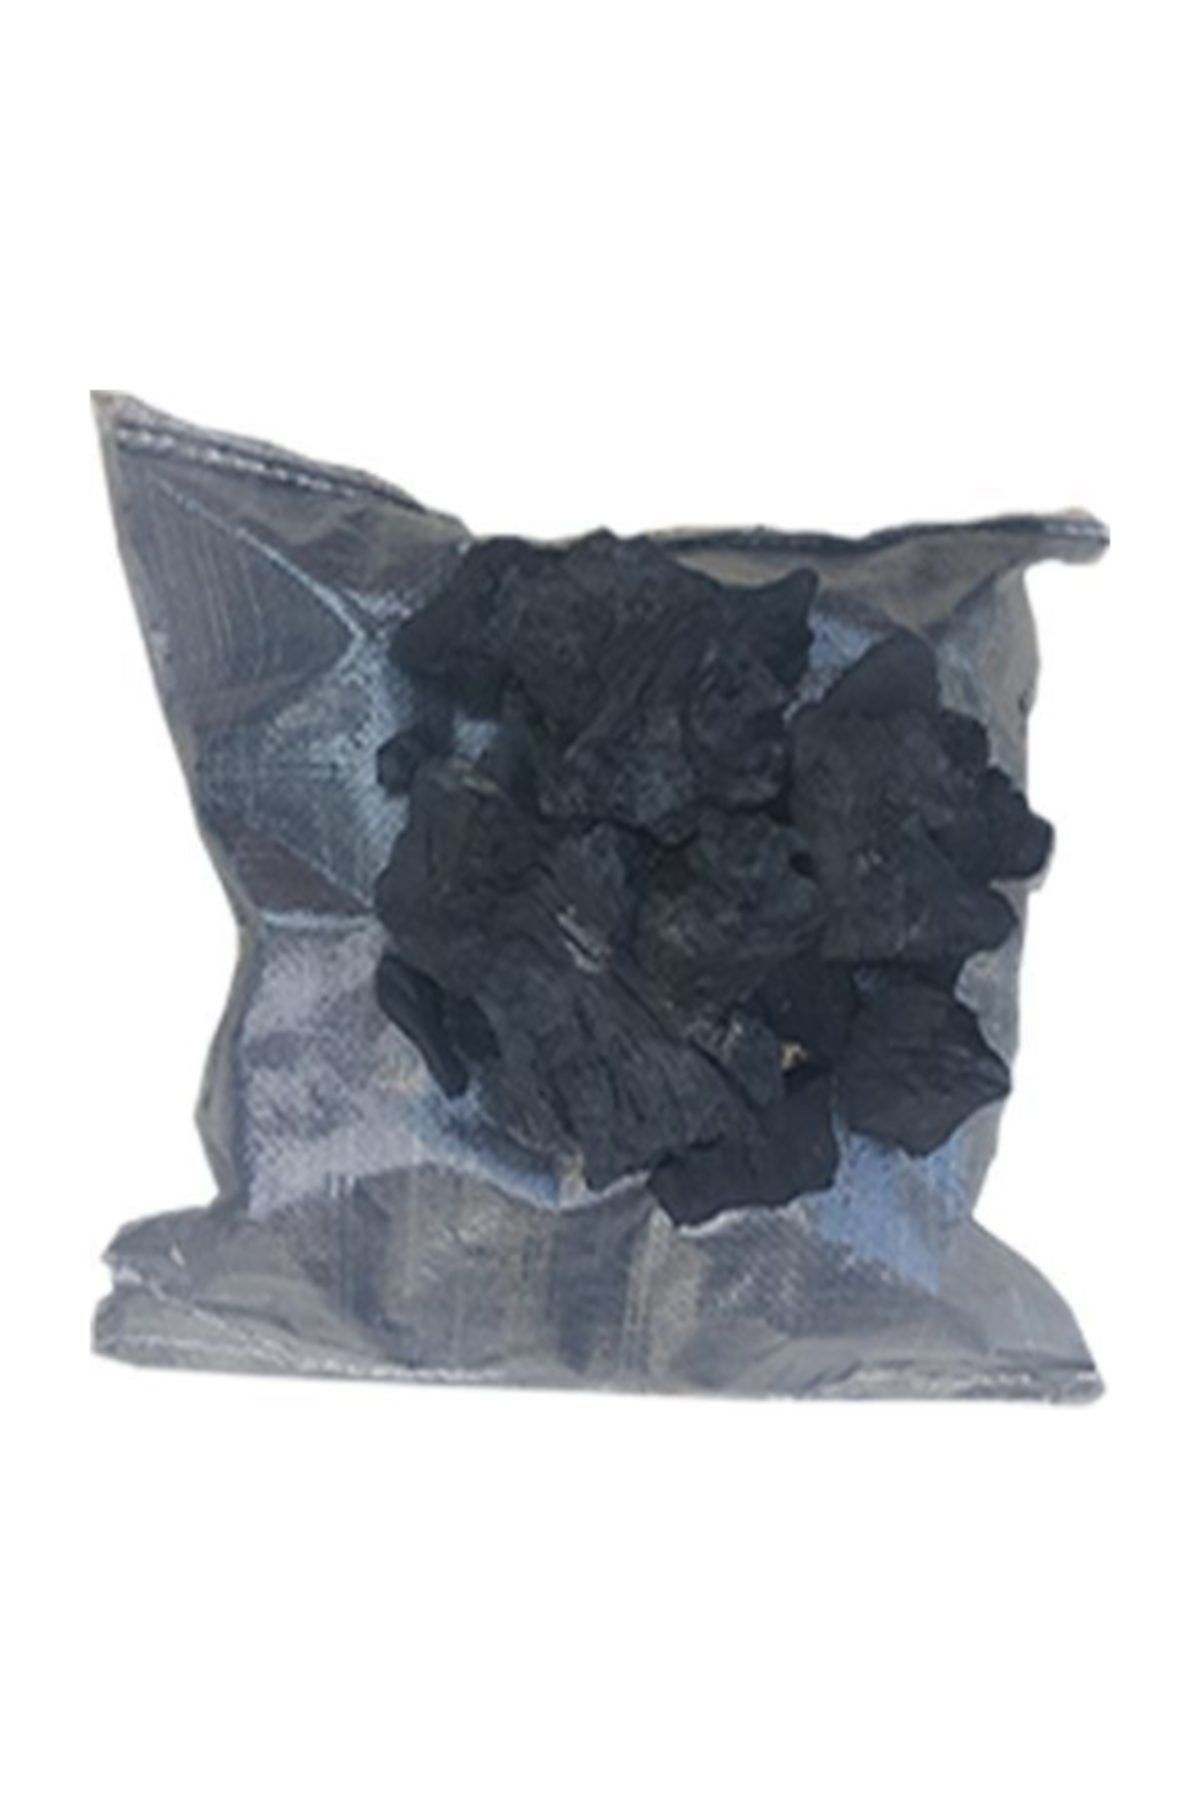 Yalova Fidan Market Torubahce Elenmiş Meşe Mangal Kömürü 20 Kg Büyük Parçalı Tozsuz